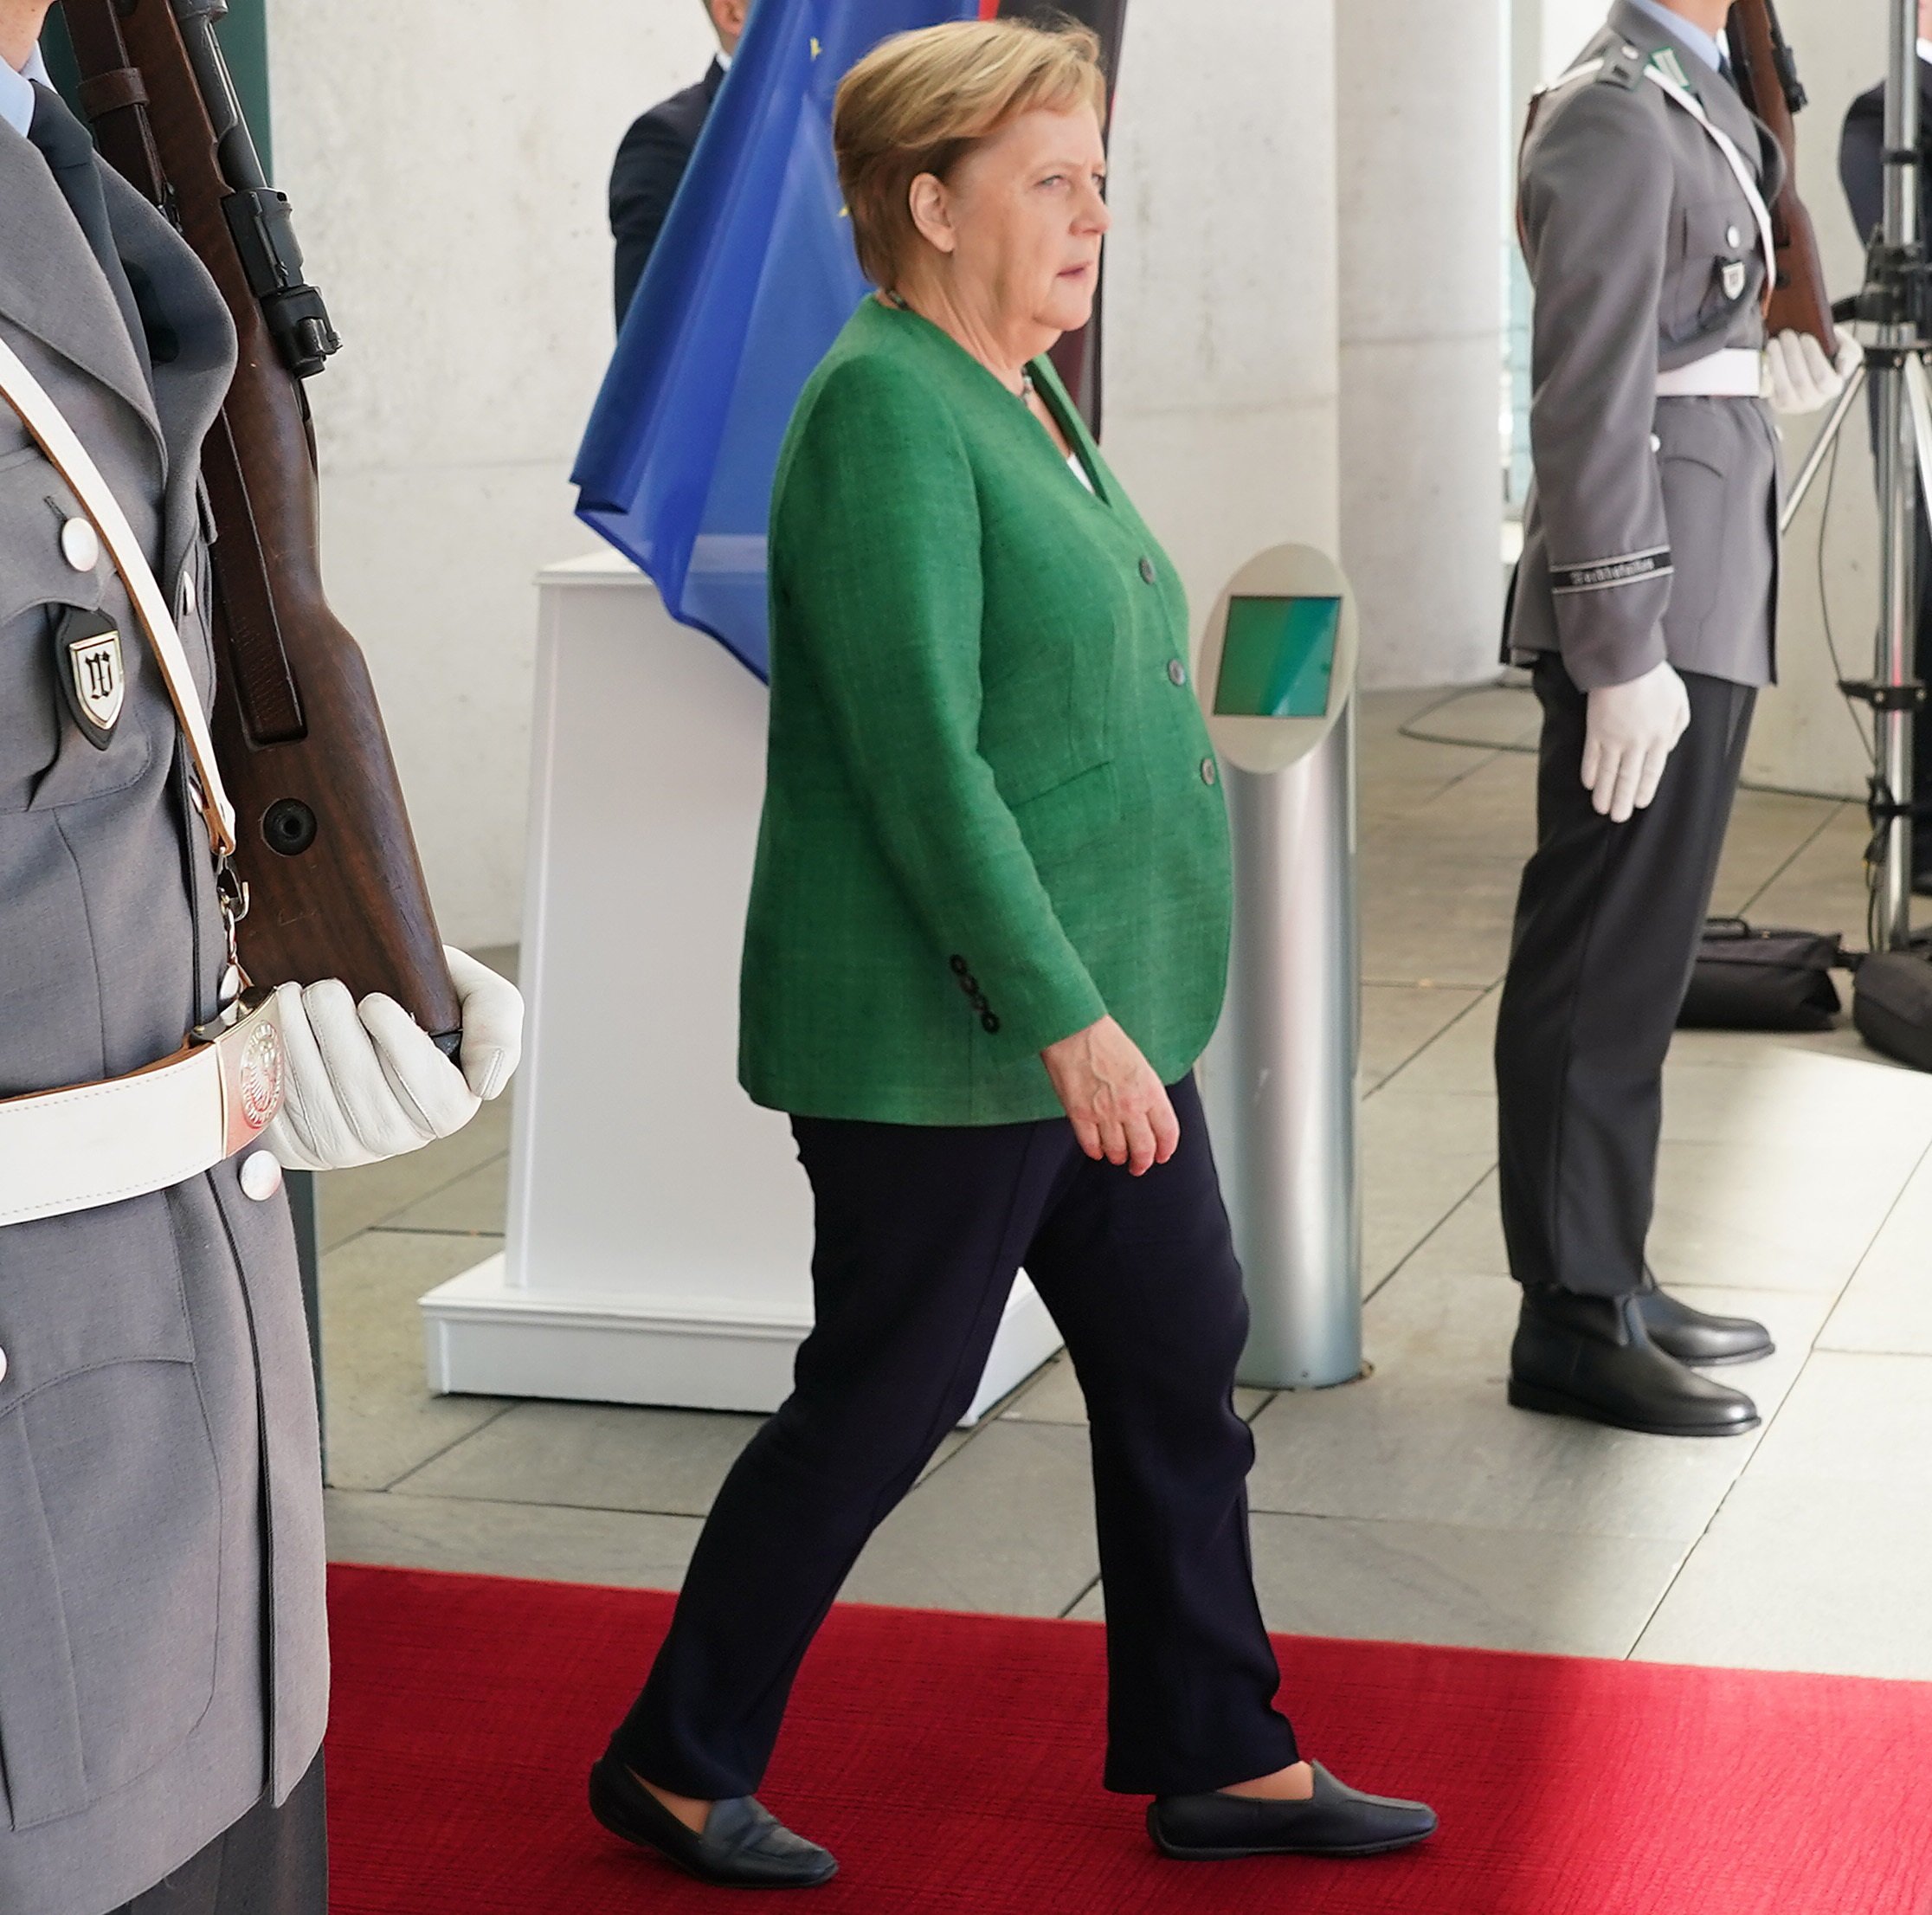 Angela Merkel en camino a recibir a Ursula von der Leyen en la Cancillería, el 18 de septiembre de 2020 en Berlín, Alemania. | Foto: Getty Images